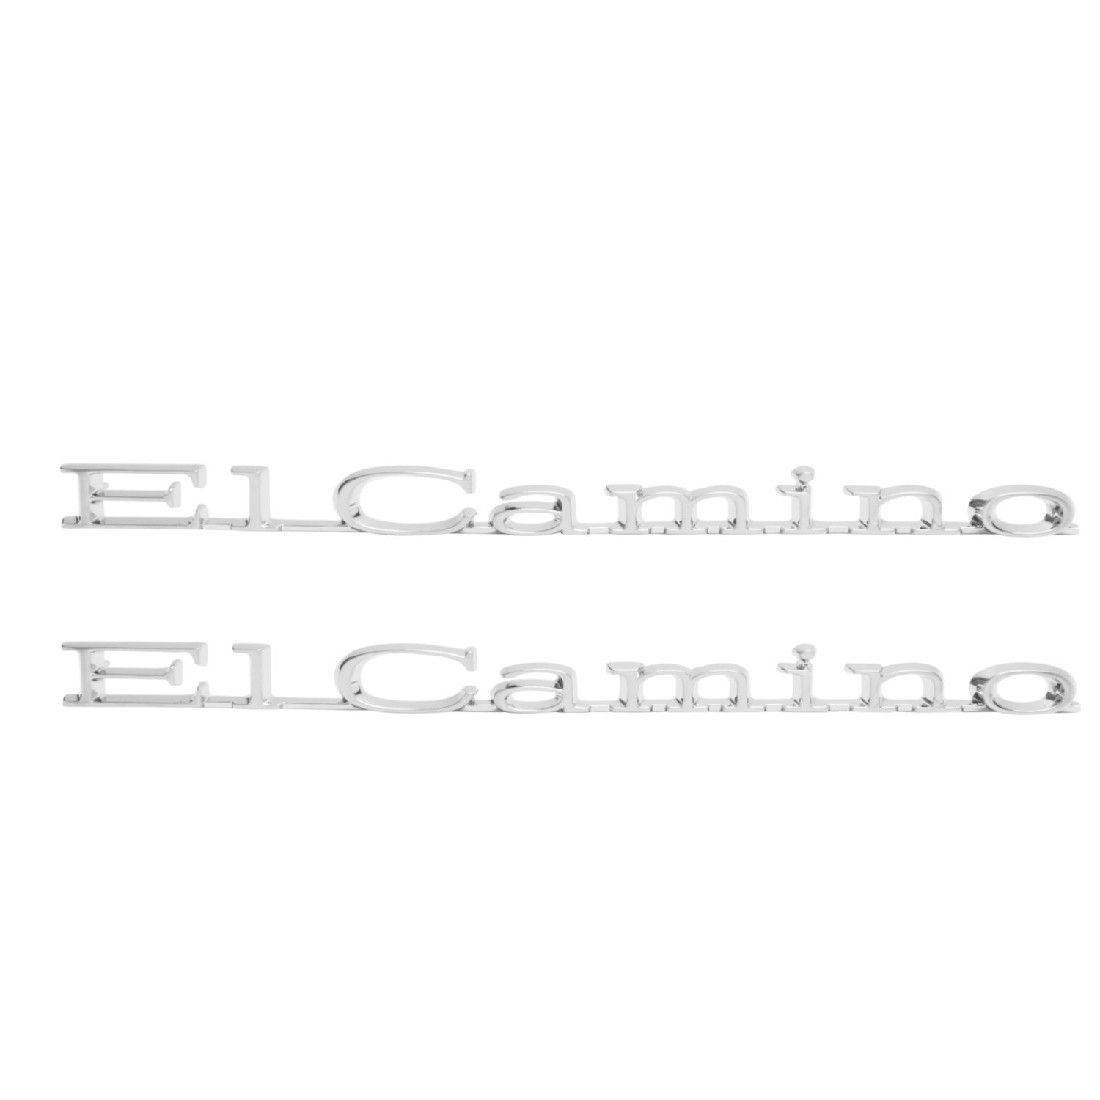 1971-1975 El Camino Fender Emblem